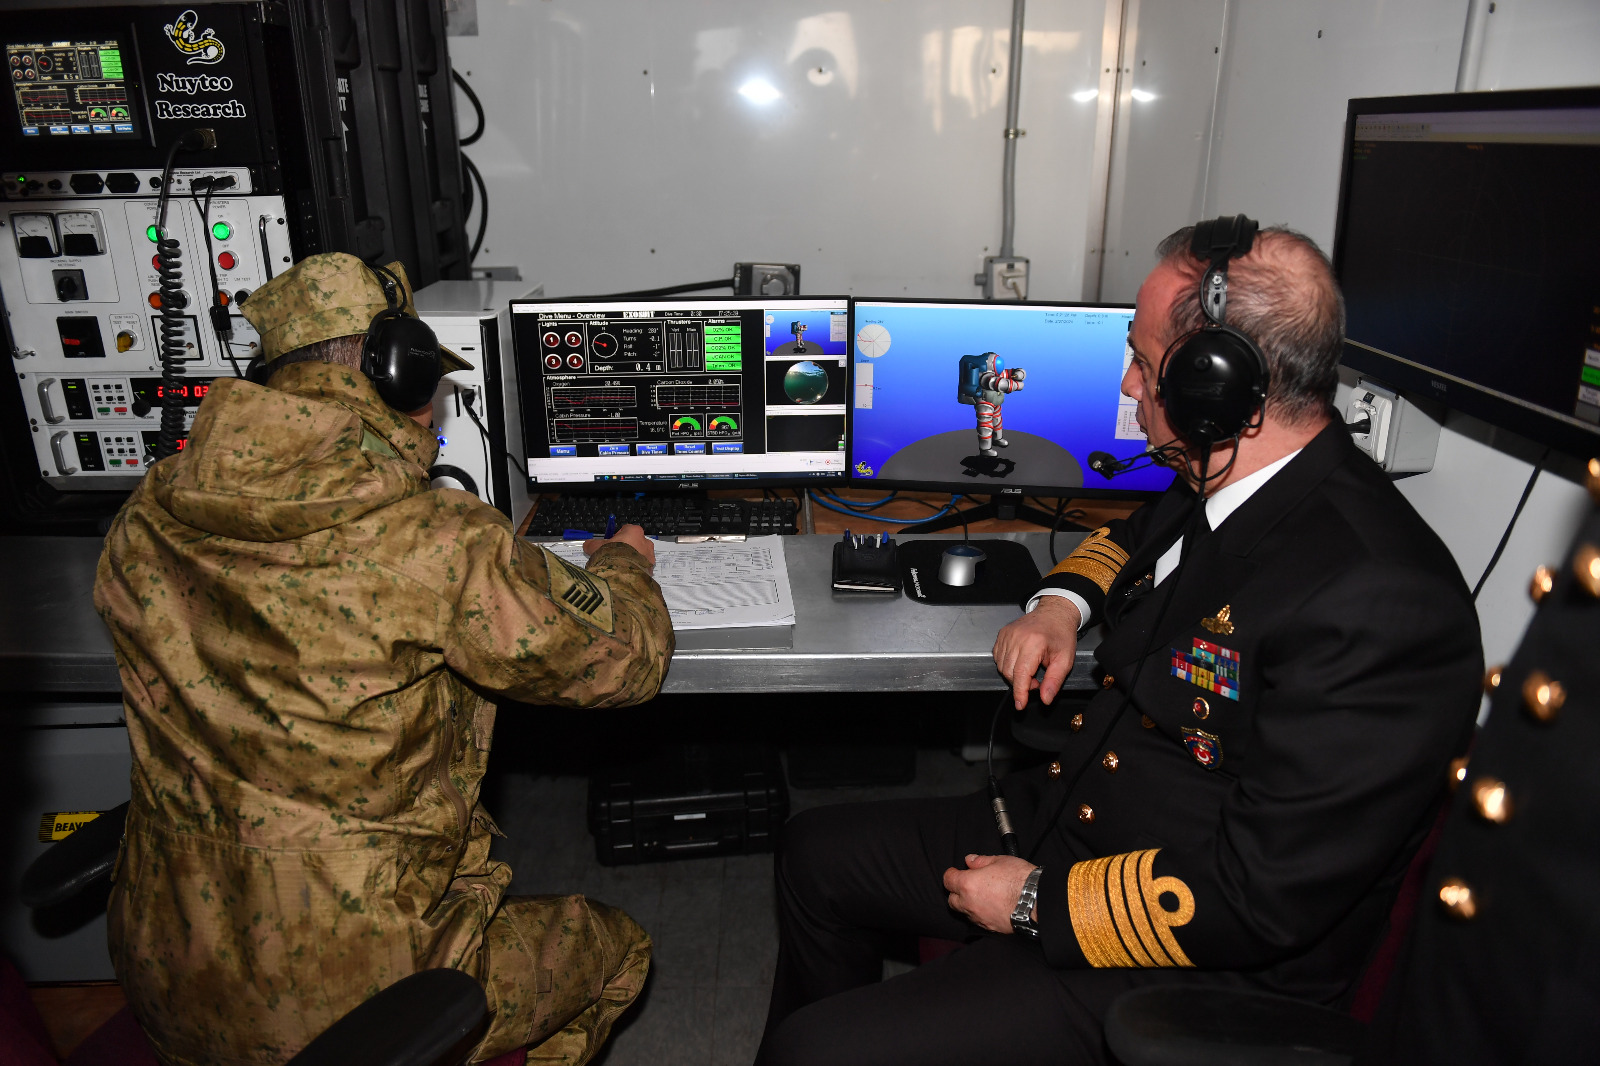 Deniz Kuvvetleri Komutanı Tatlıoğlu, İstanbul bölgesinde Komutanlıkları ziyaret etti